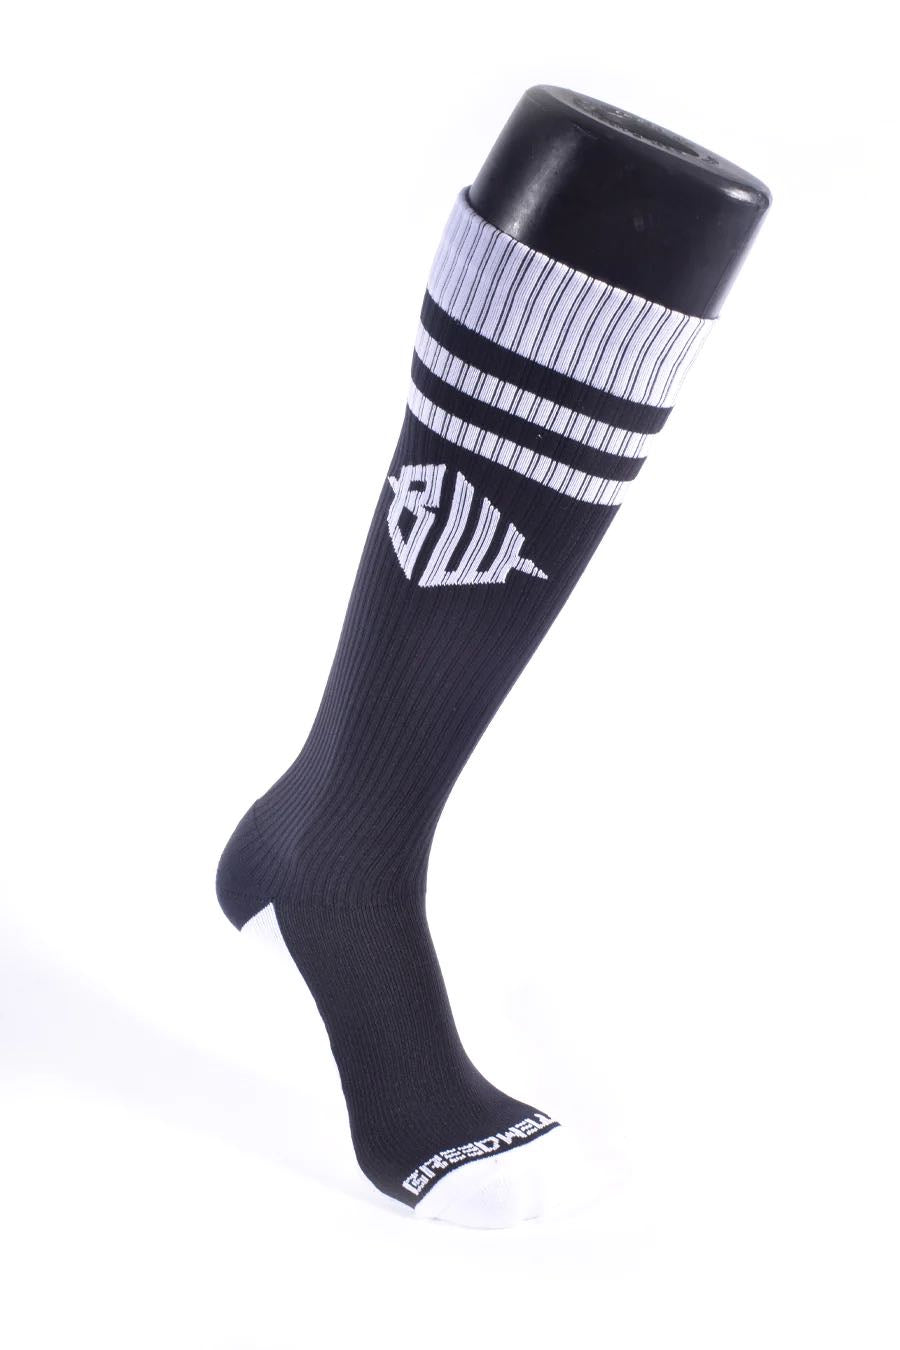 The black Hex Socks on a mannequin leg.